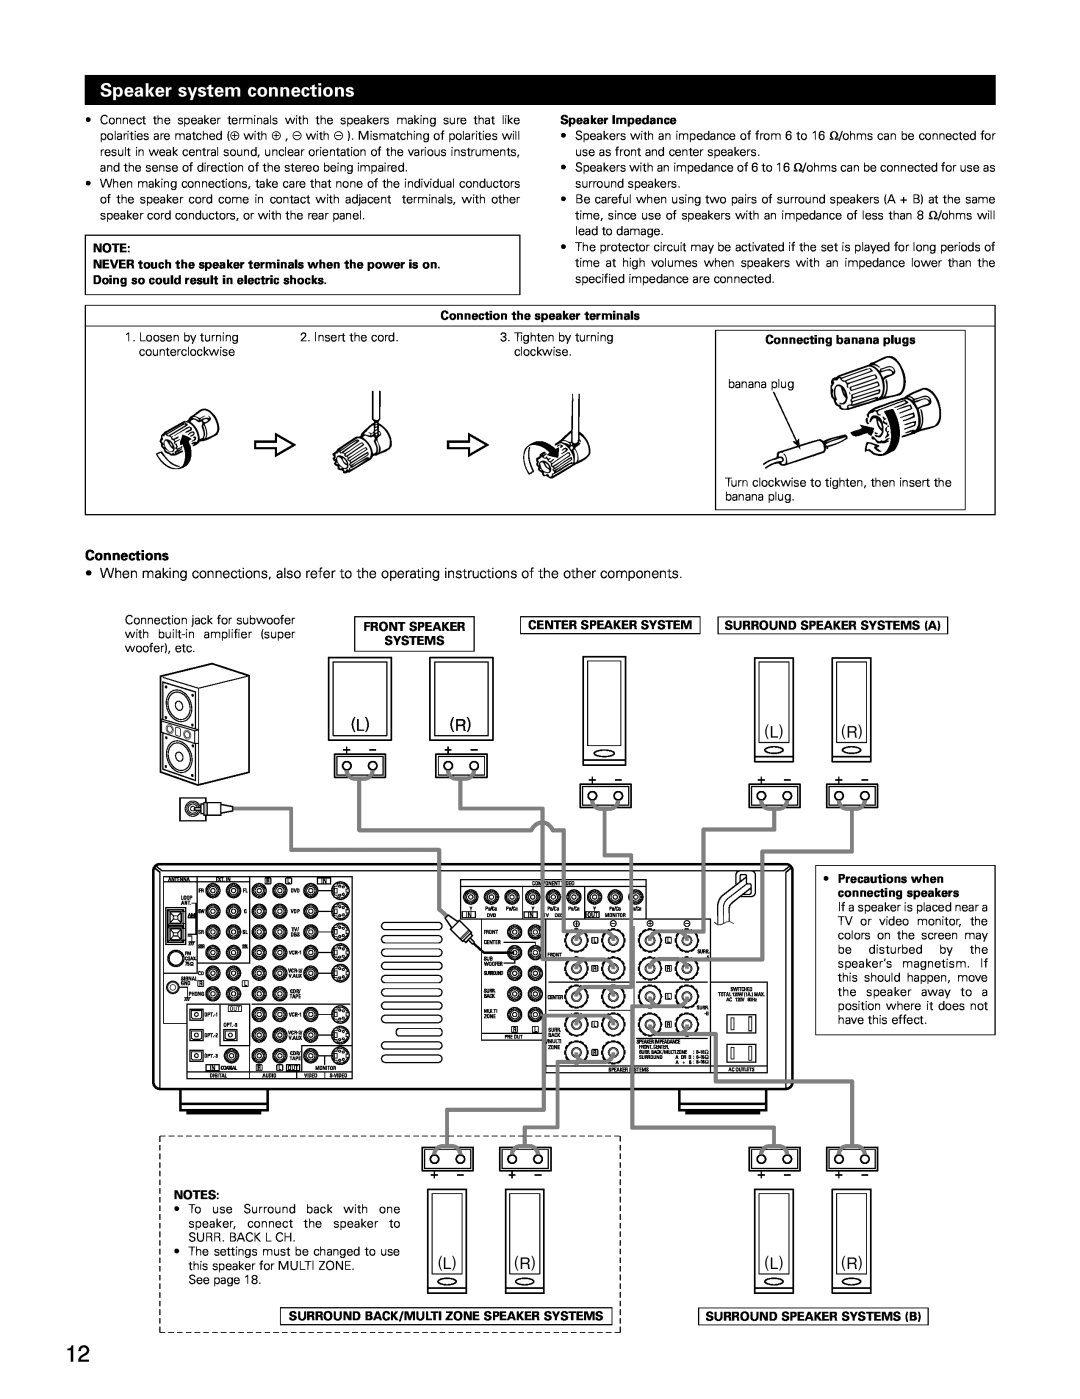 Denon AVR-3802 Speaker system connections, Speaker Impedance, Connection the speaker terminals, Connecting banana plugs 